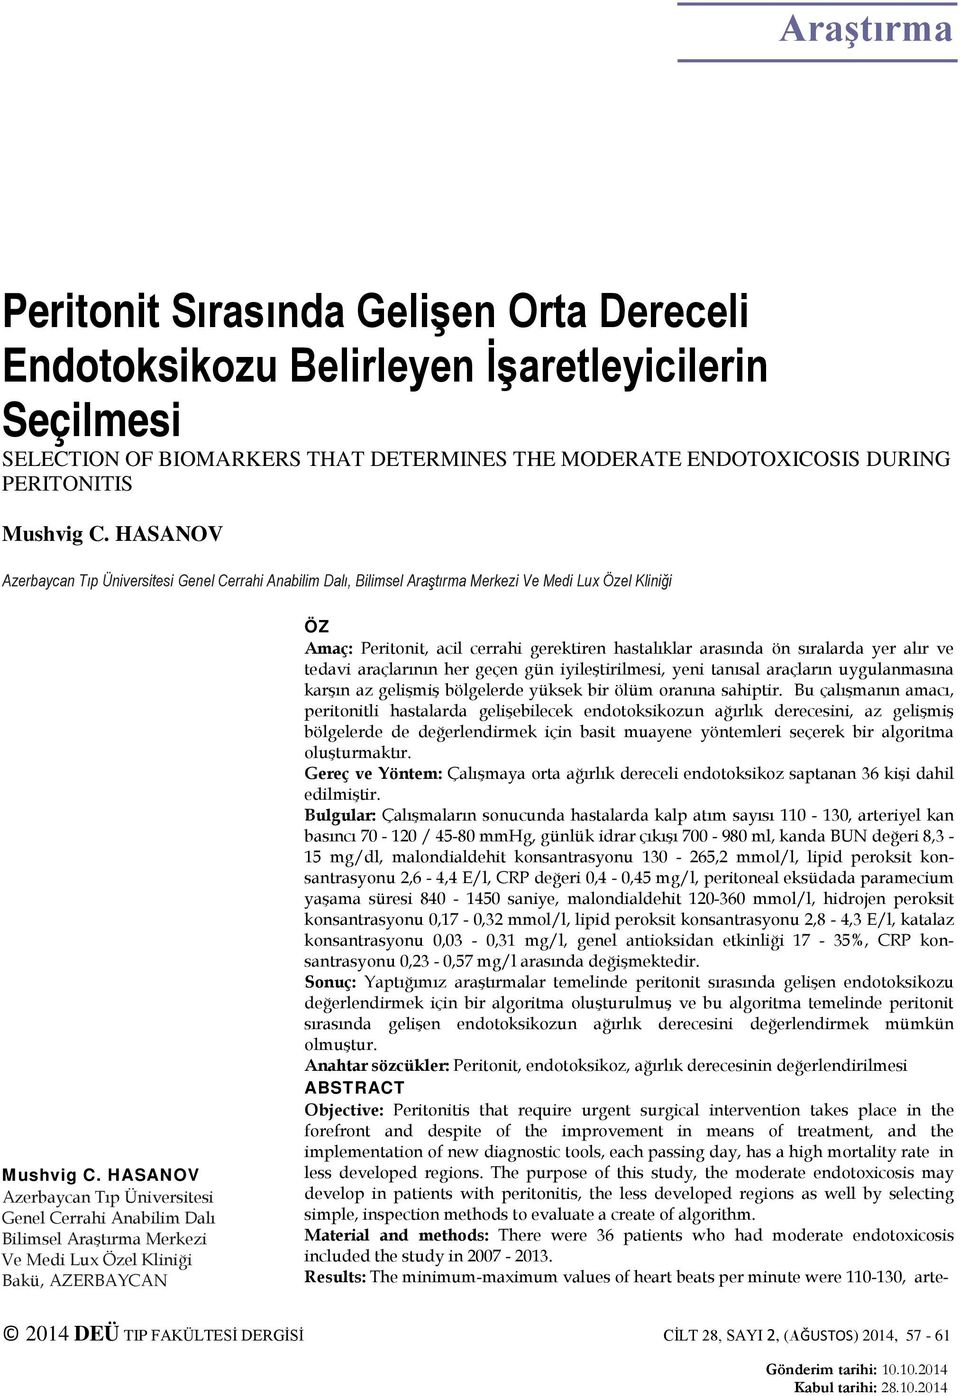 HASANOV Azerbaycan Tıp Üniversitesi Genel Cerrahi Anabilim Dalı Bilimsel Araştırma Merkezi Ve Medi Lux Özel Kliniği Bakü, AZERBAYCAN ÖZ Amaç: Peritonit, acil cerrahi gerektiren hastalıklar arasında